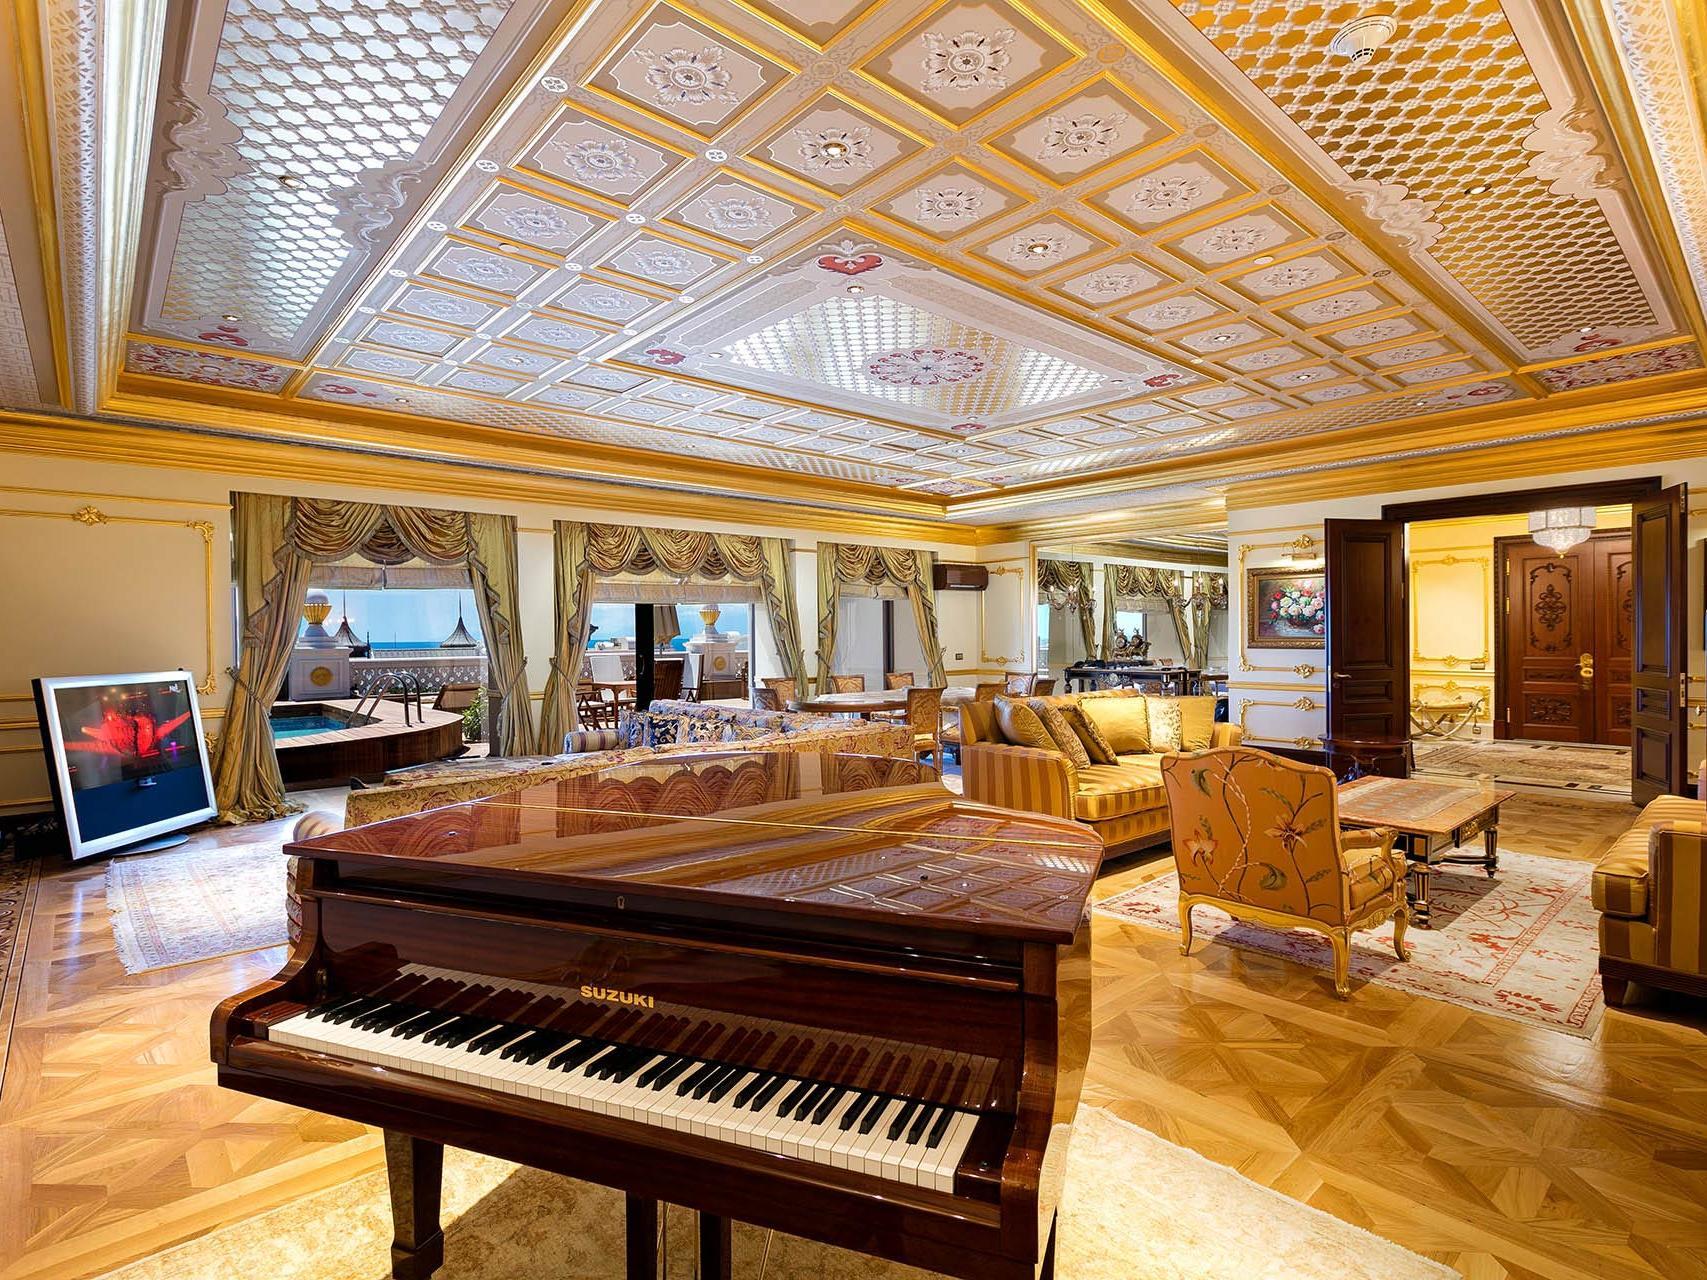 Топ-10 отелей для релаксации и СПА в Турции 2014 года